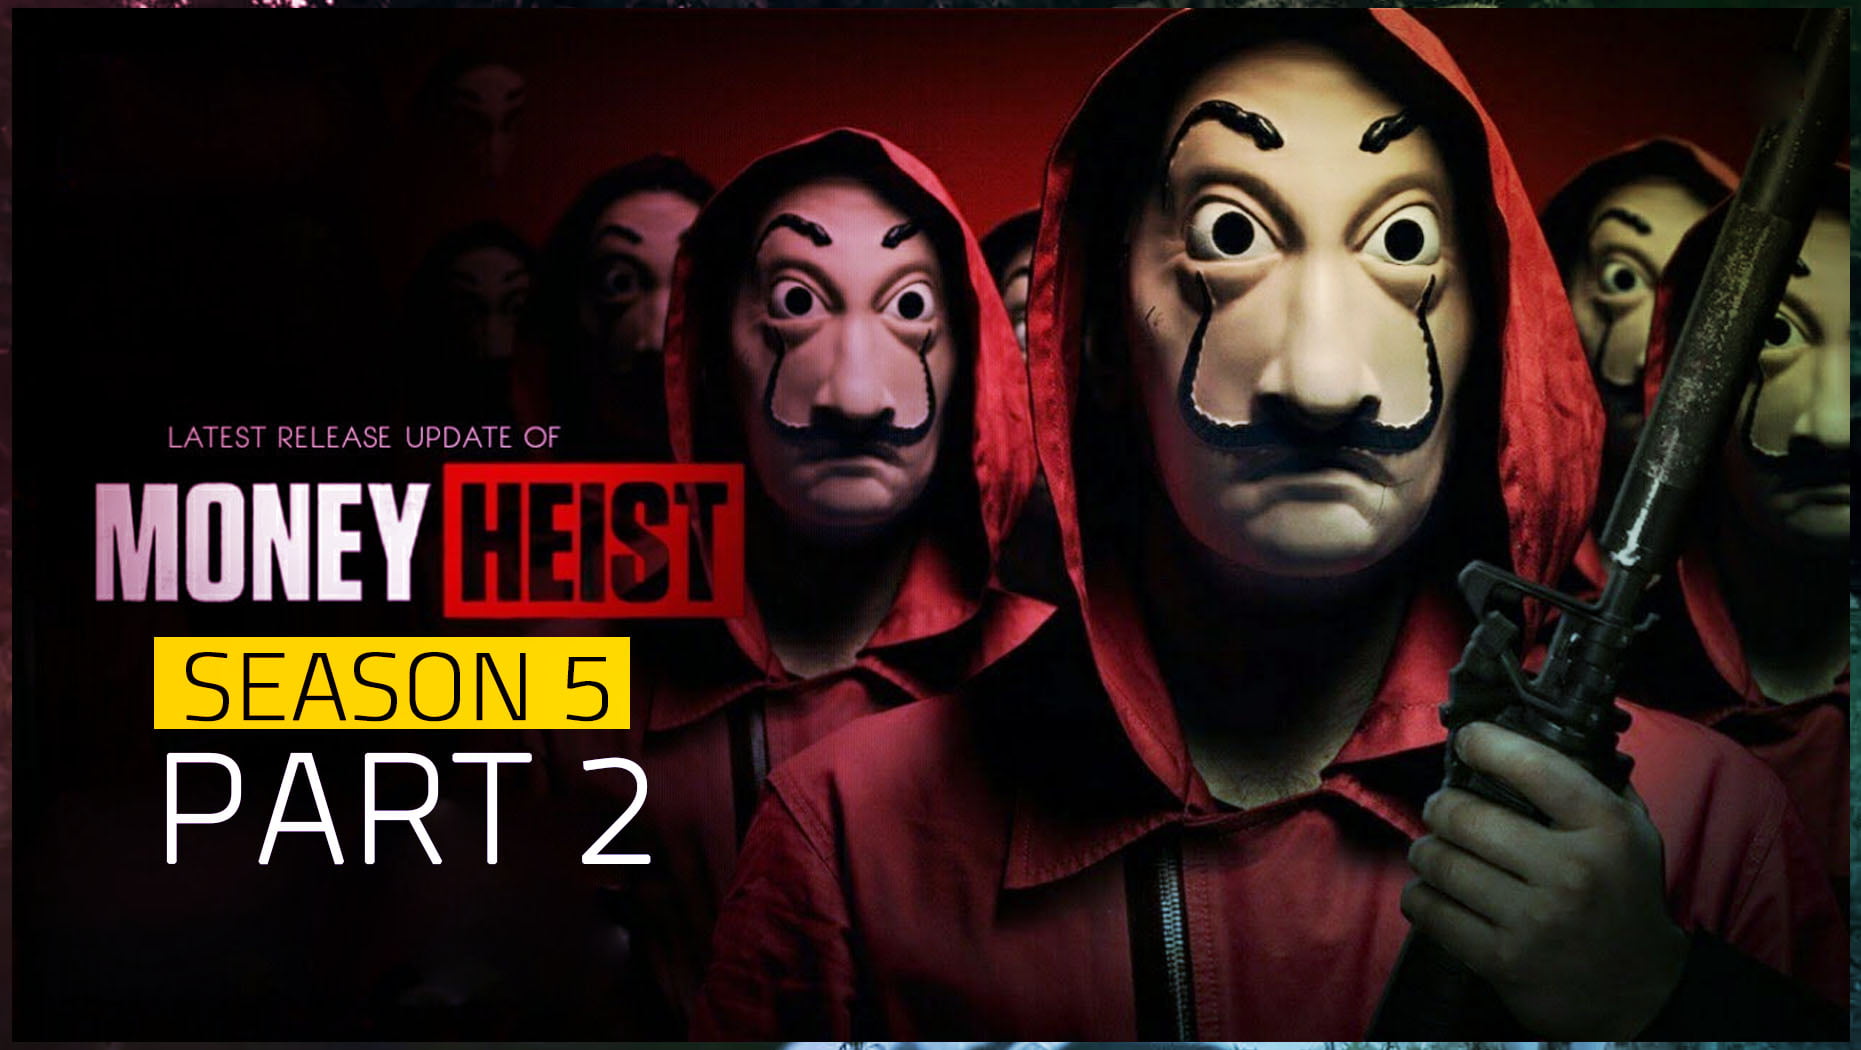 Money heist season 5 release date